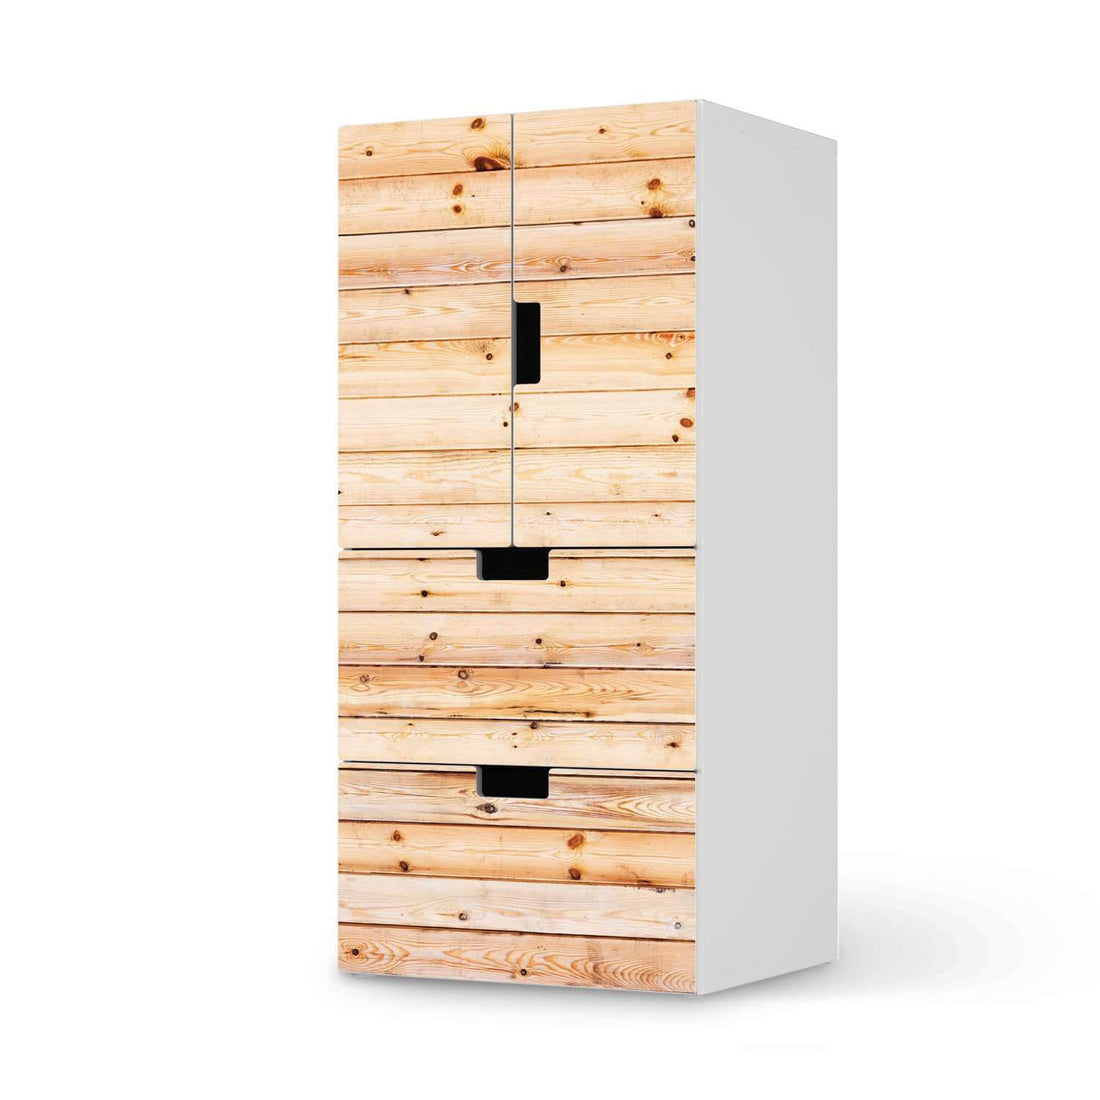 Möbelfolie Bright Planks - IKEA Stuva kombiniert - 2 Schubladen und 2 kleine Türen  - weiss